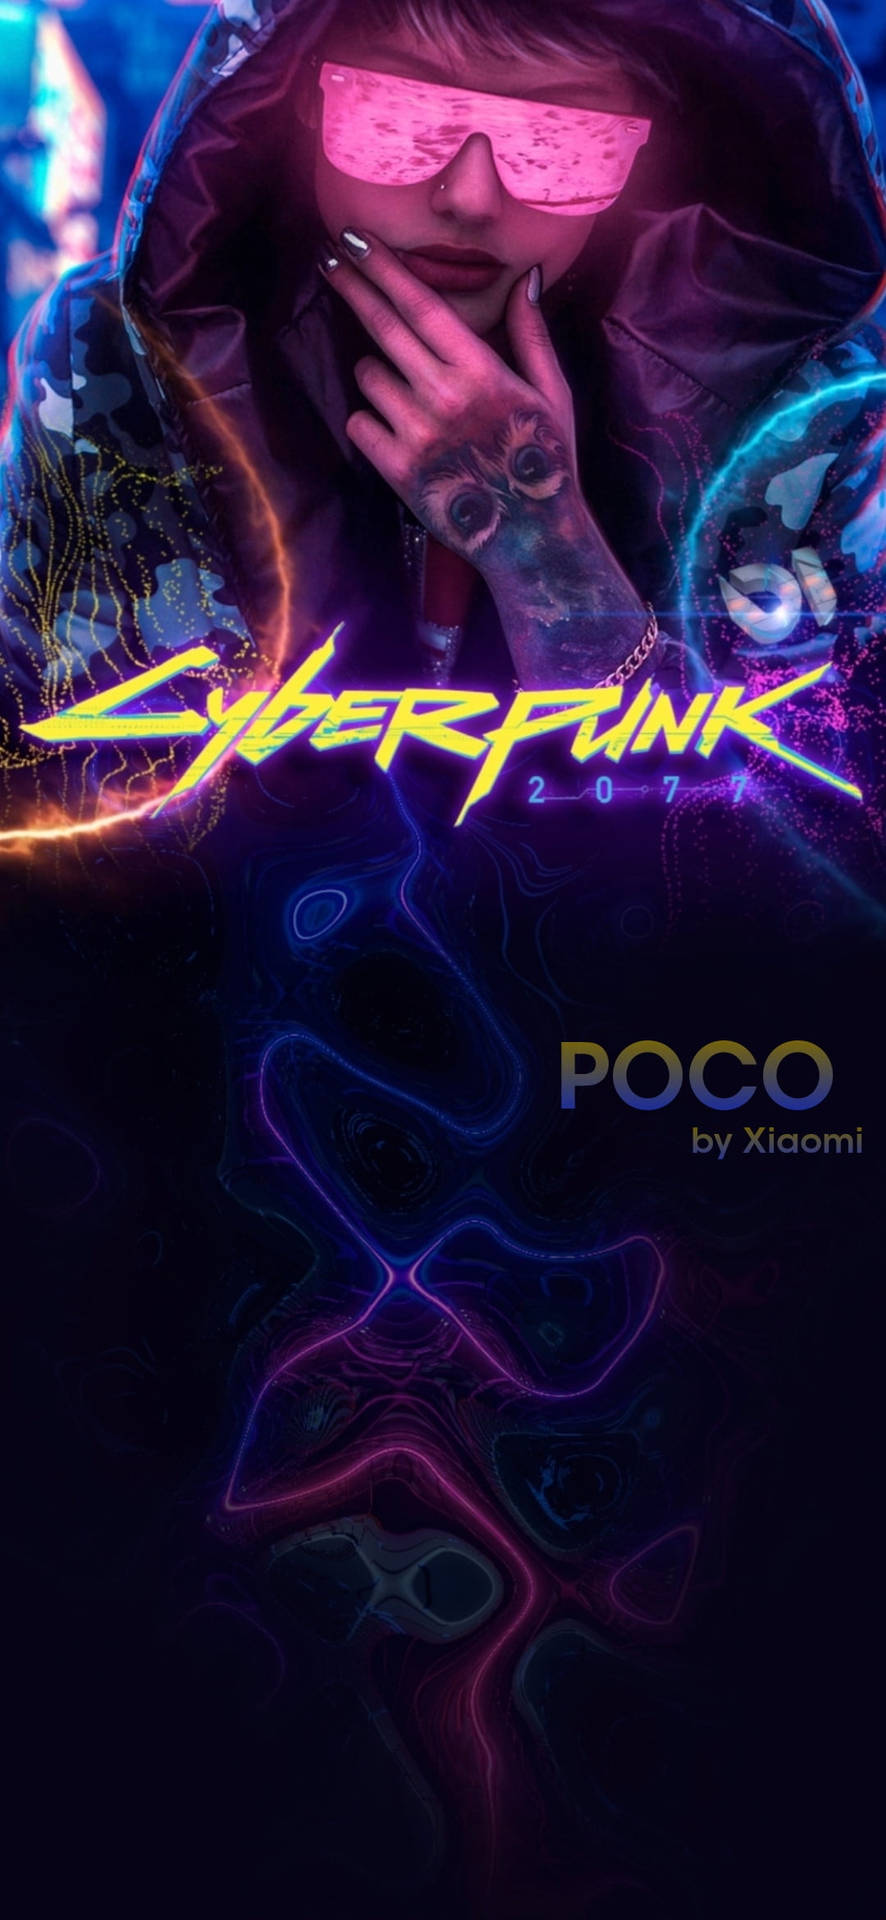 Pocox2 Cyberpunk Von Xiaomi Wallpaper